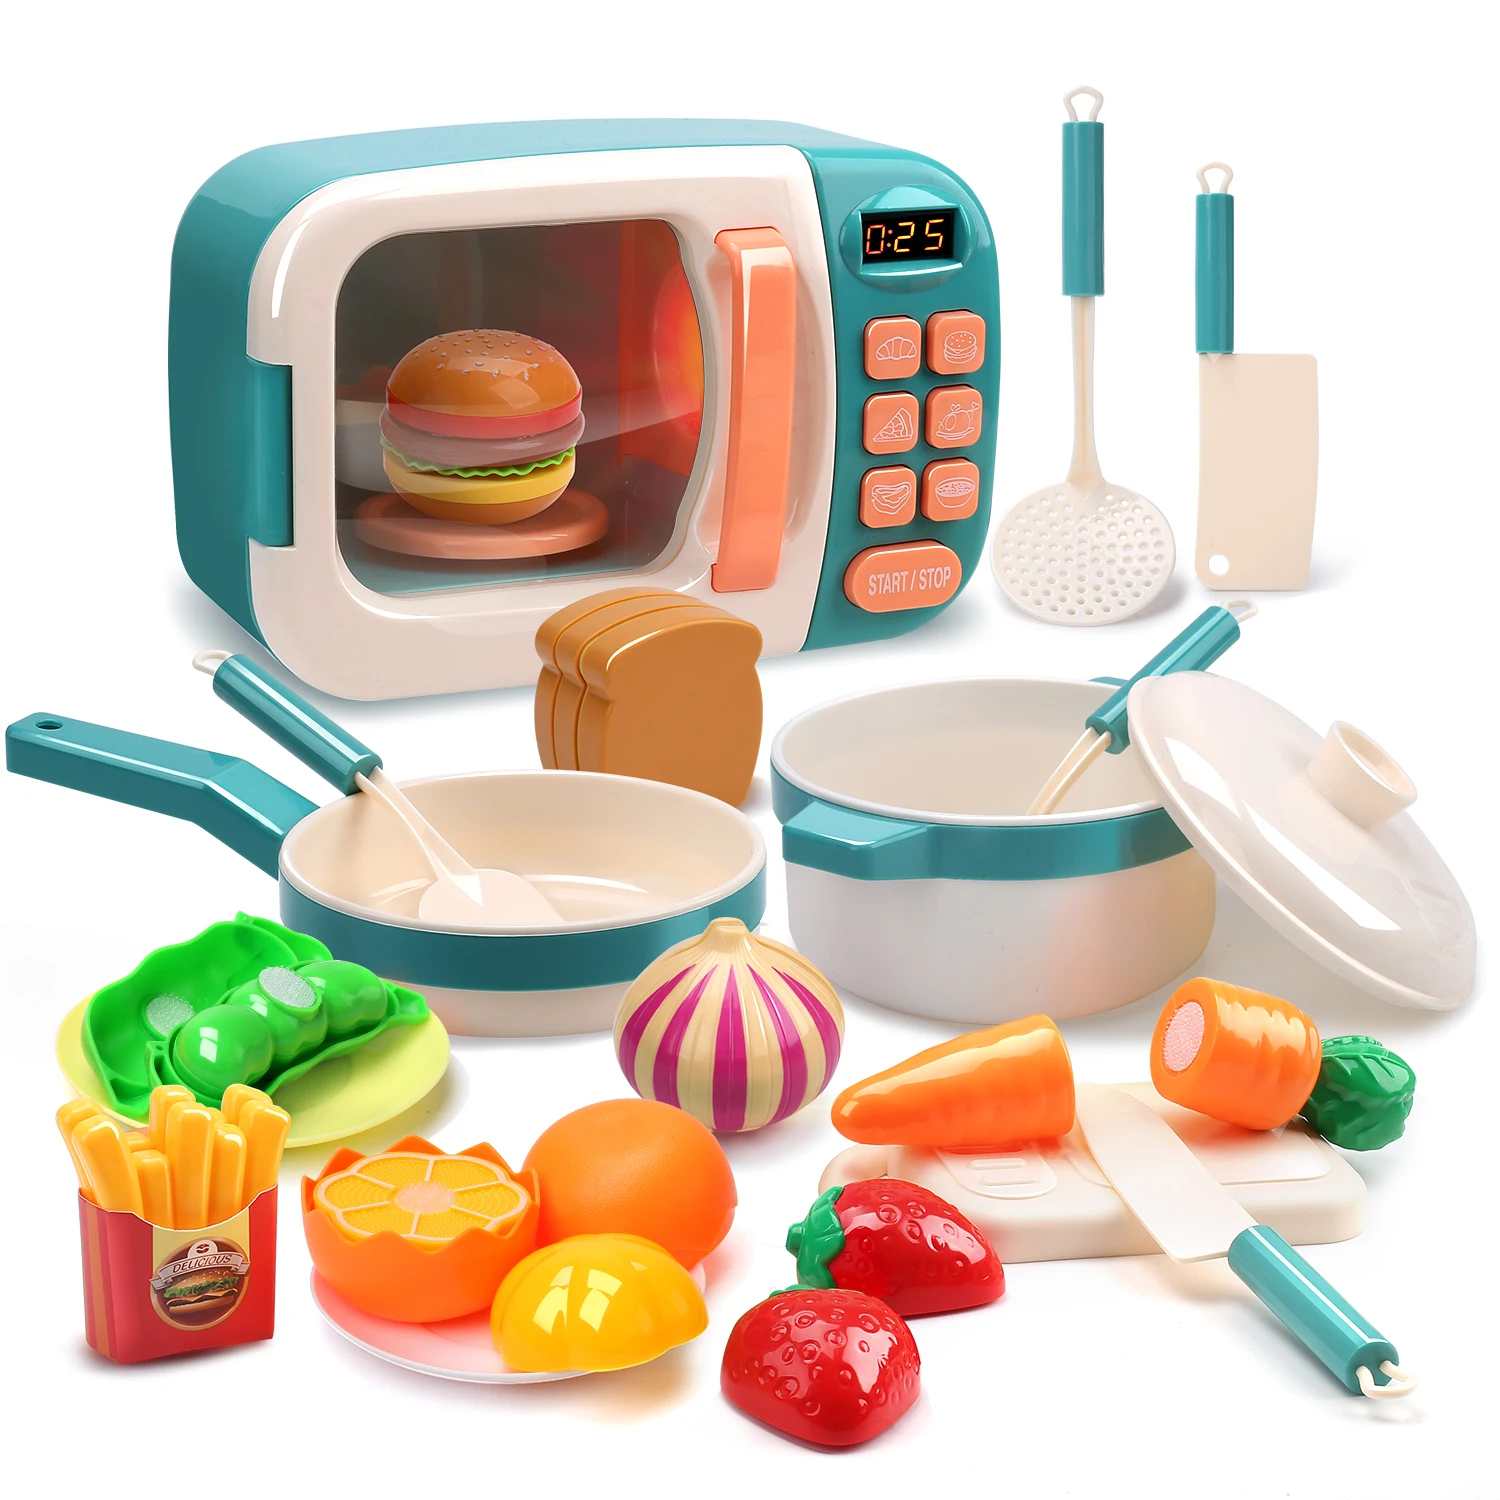 Микроволновые игрушки наборы для кухни детские ролевых игр Электронная духовка